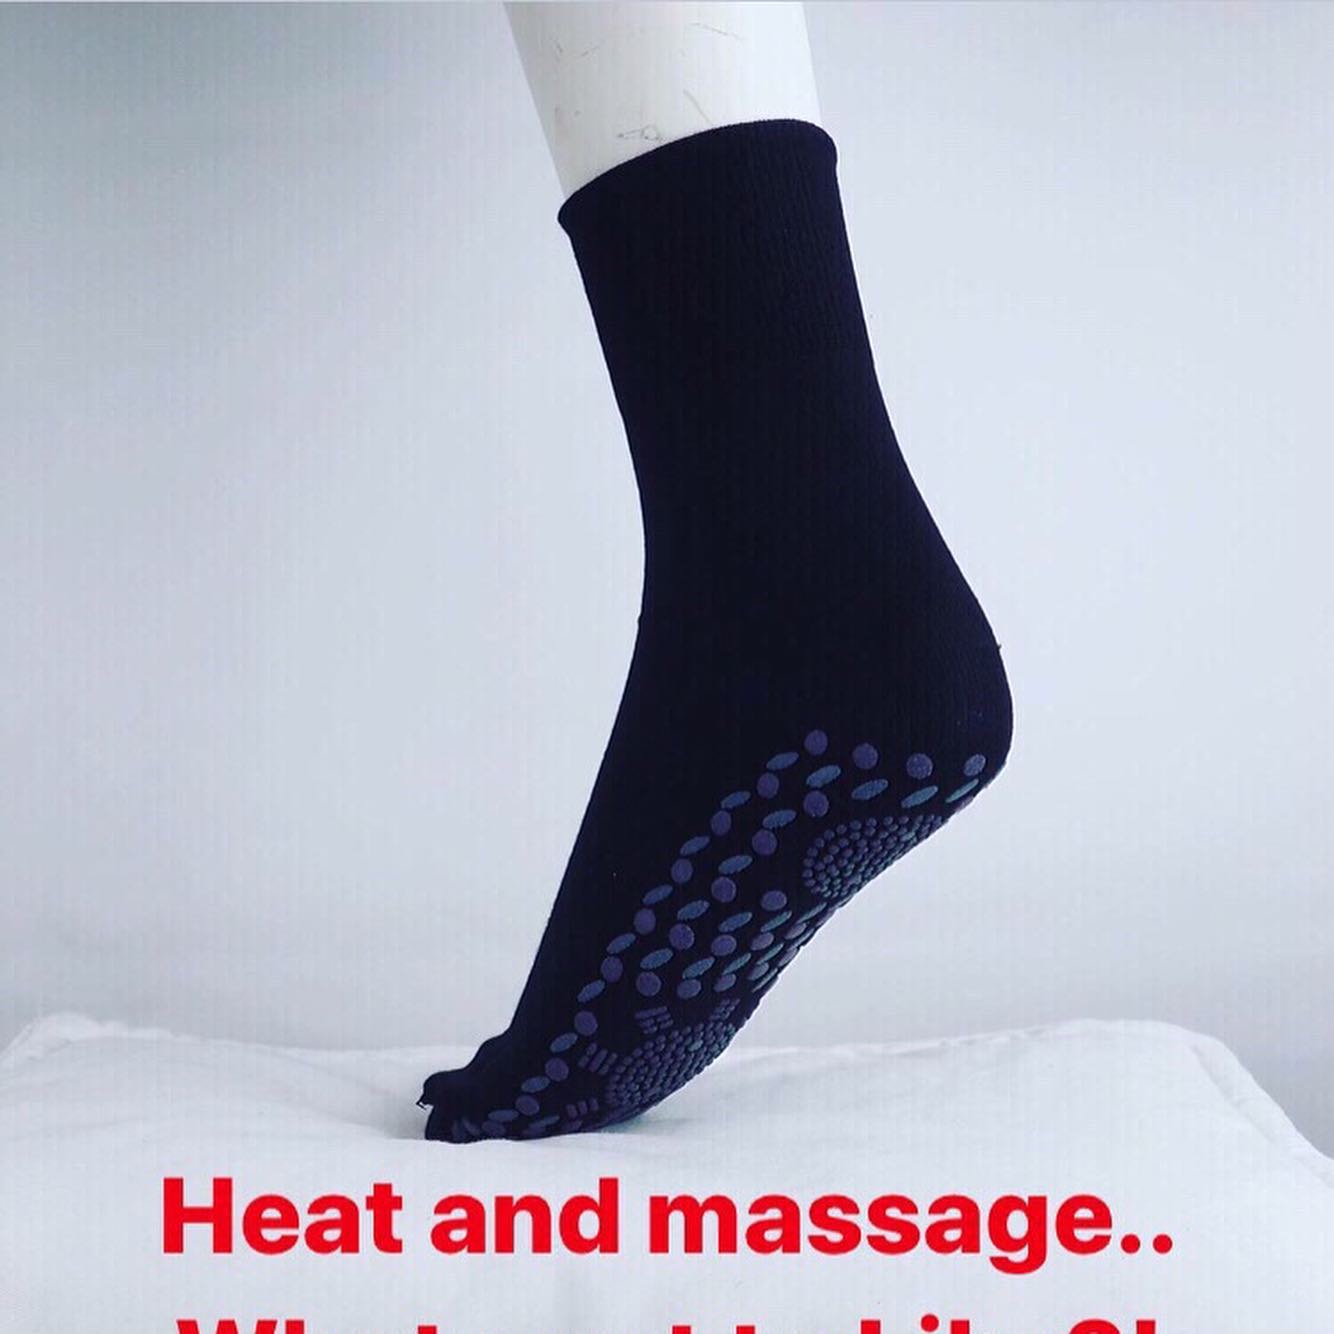 junk Uendelighed Adelaide Ankel Strømper med varme og Massage effekt under fodsålen. - Krogsgaard  Hestefoder